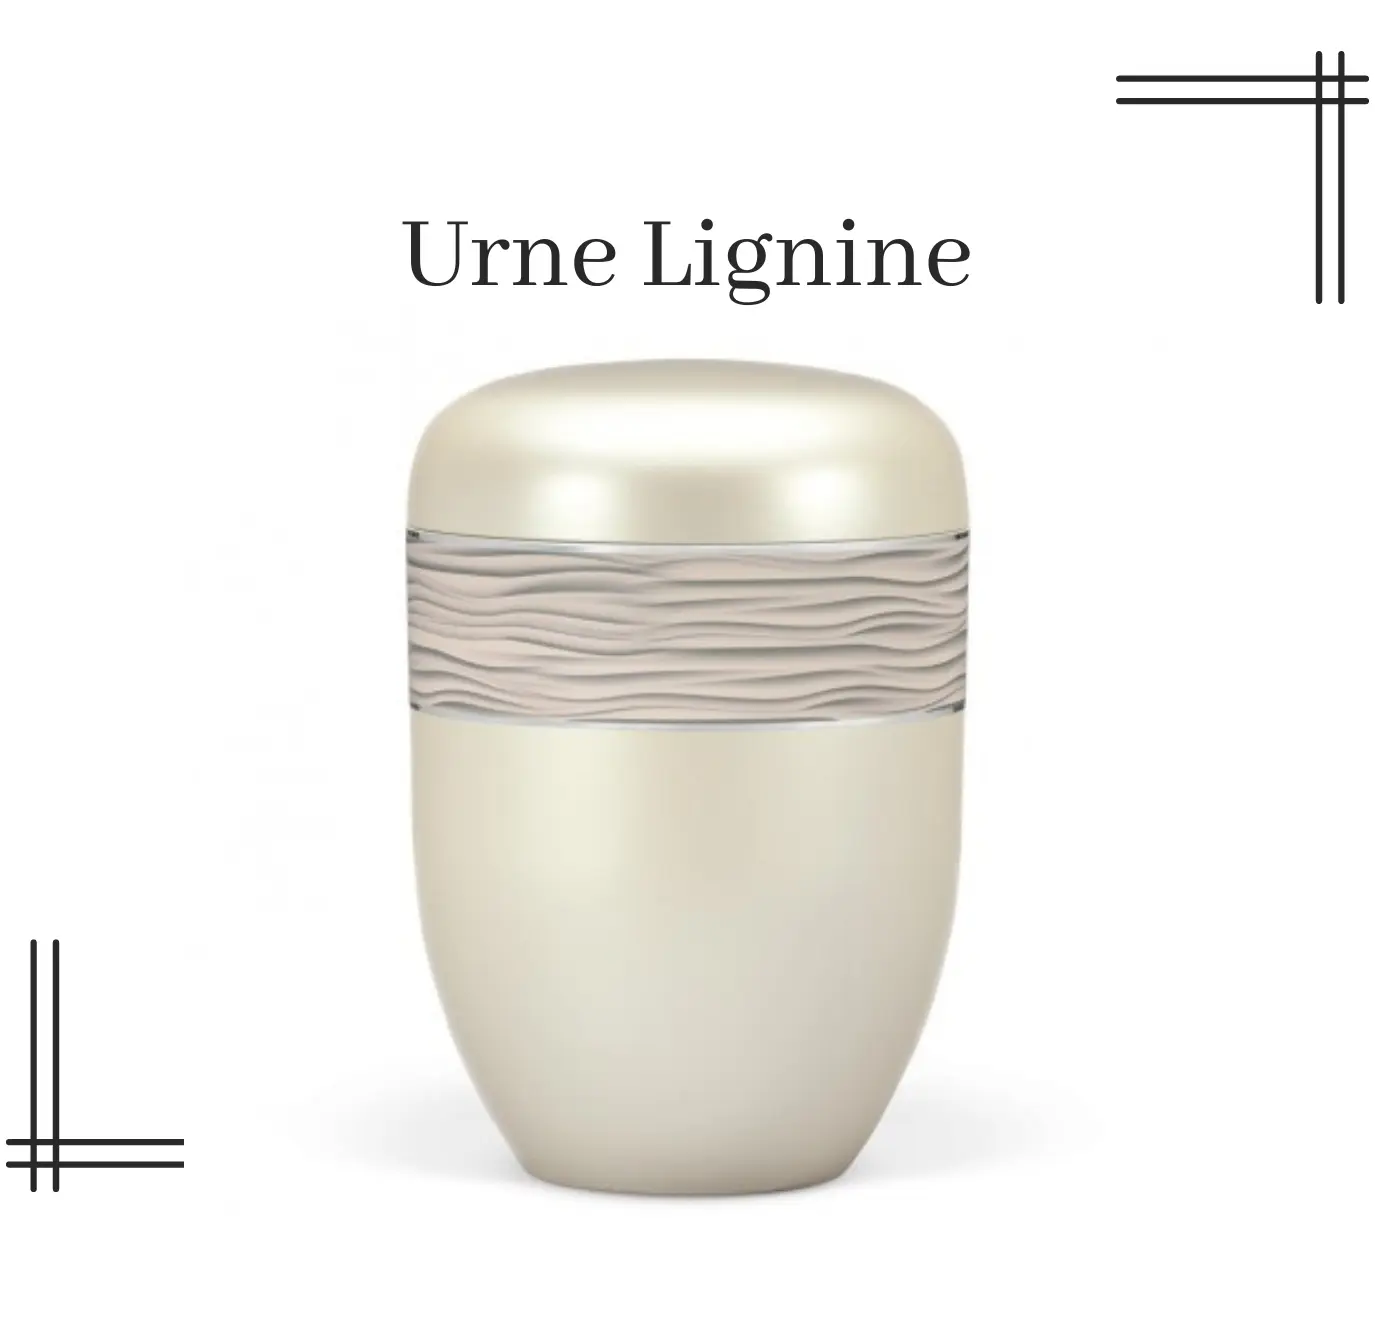 urne lignine